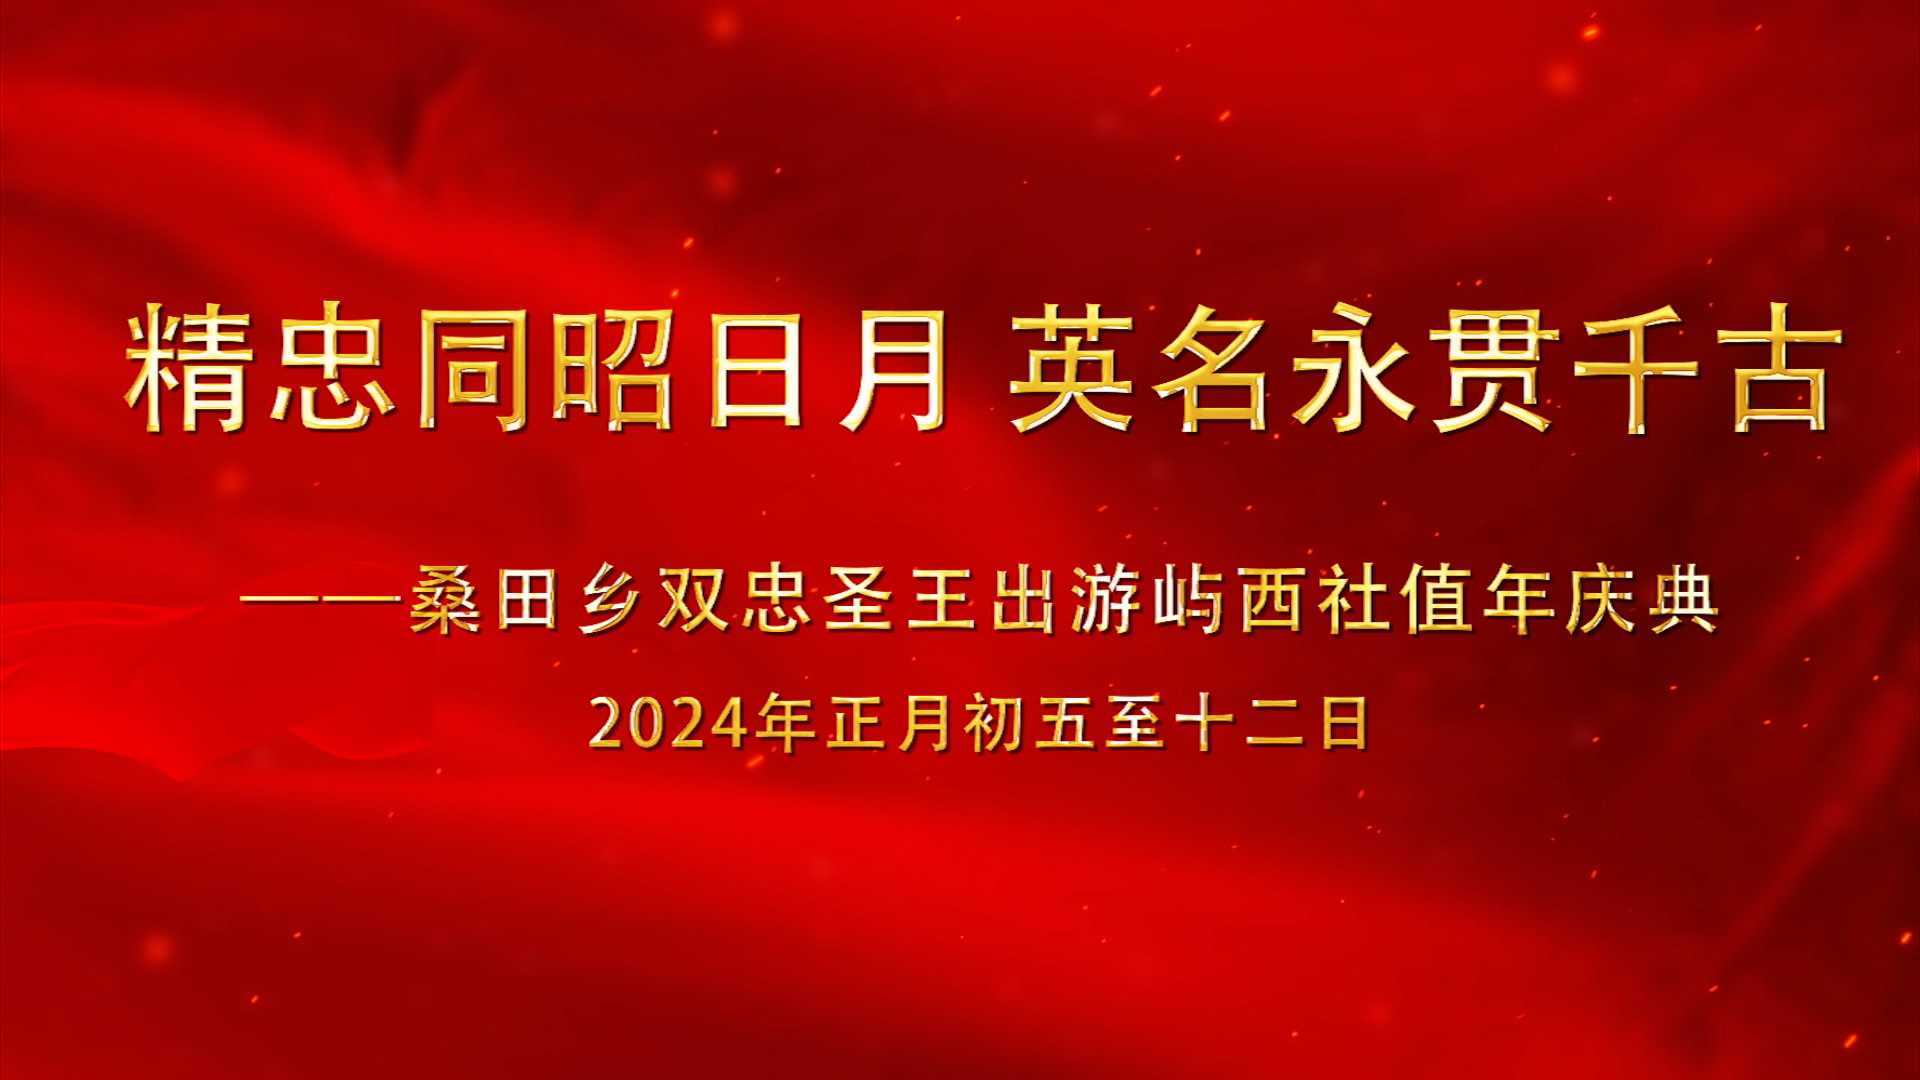 A 桑田乡双忠圣王出游屿西社值年庆典( 2024年正月)